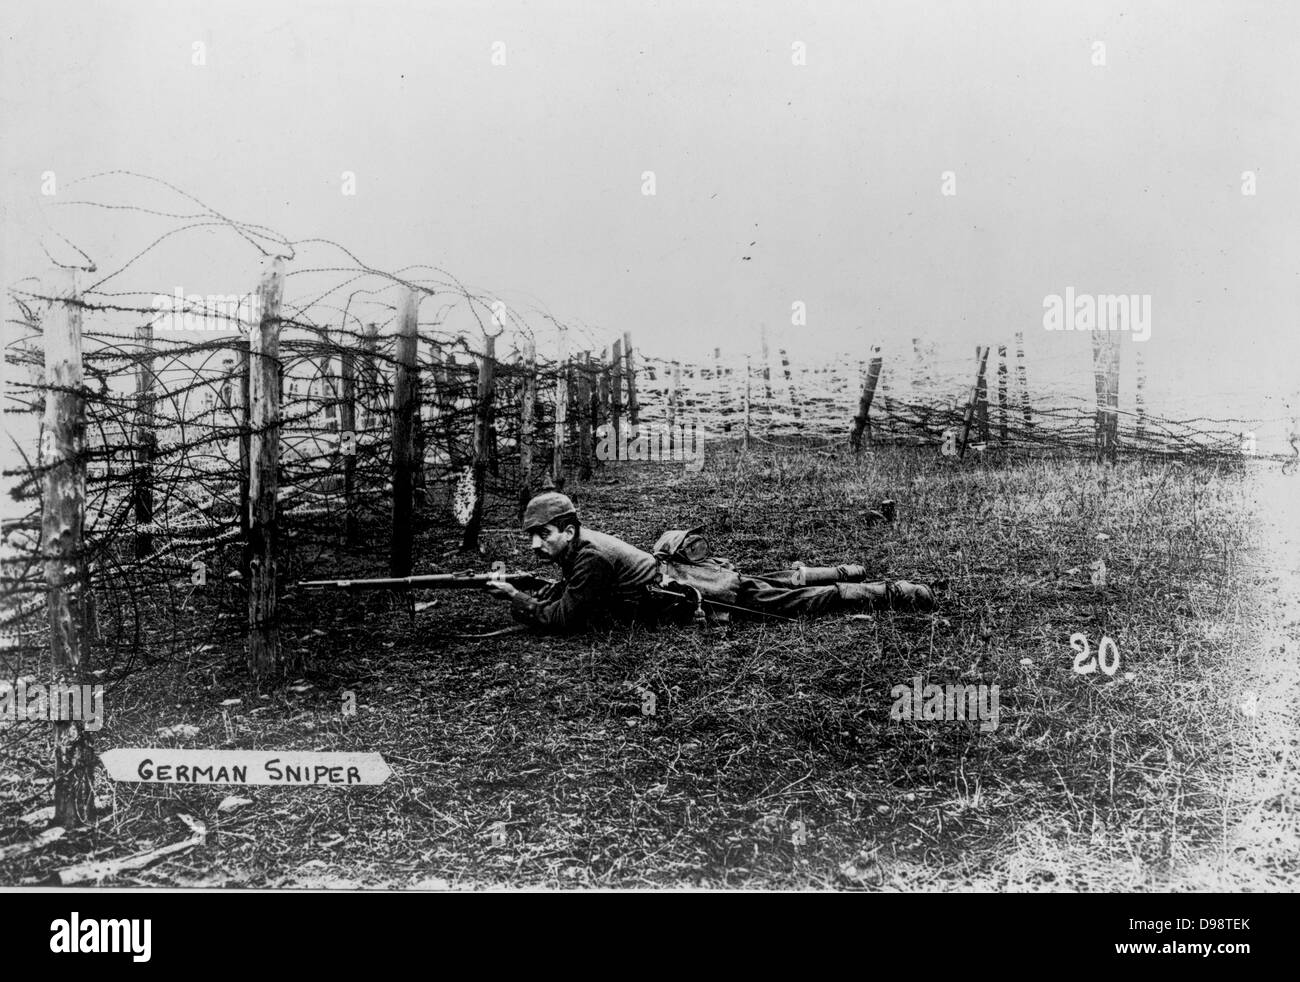 Der erste Weltkrieg 1914-1918: Deutsche Sniper trägt einen pickelhelm, liegen auf dem Boden hinter Stacheldraht Verstrickungen, das Gewehr bereit. Stockfoto